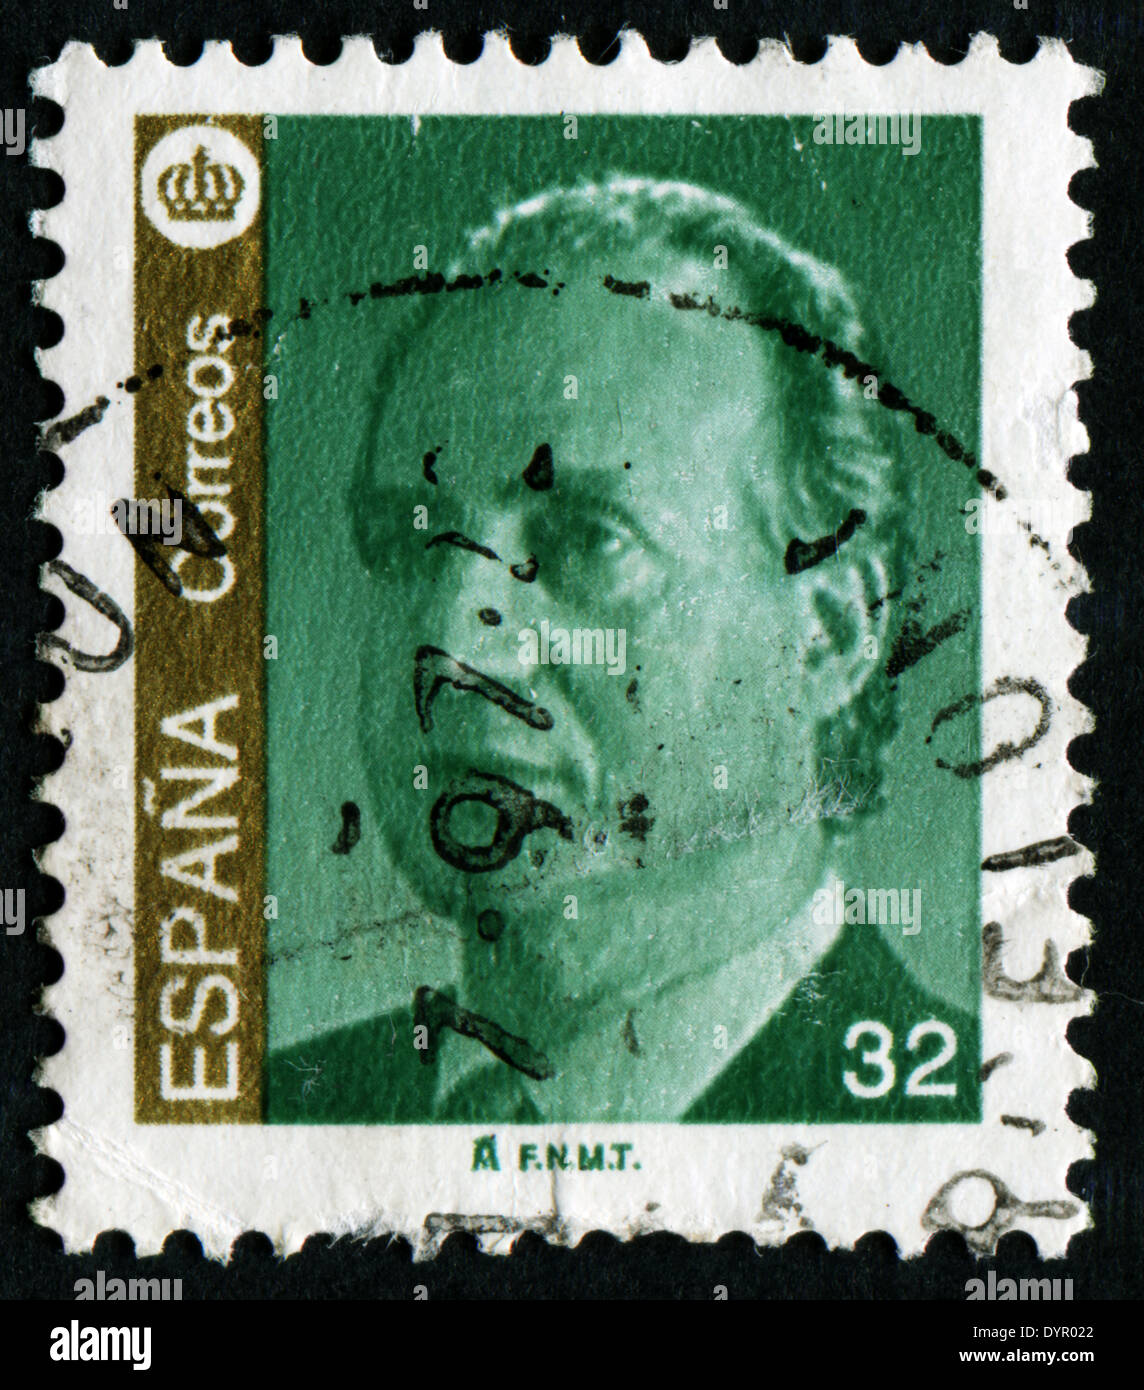 España - circa 1985: un sello impreso en España muestra un retrato del rey Juan Carlos I de España sin inscripción. Foto de stock